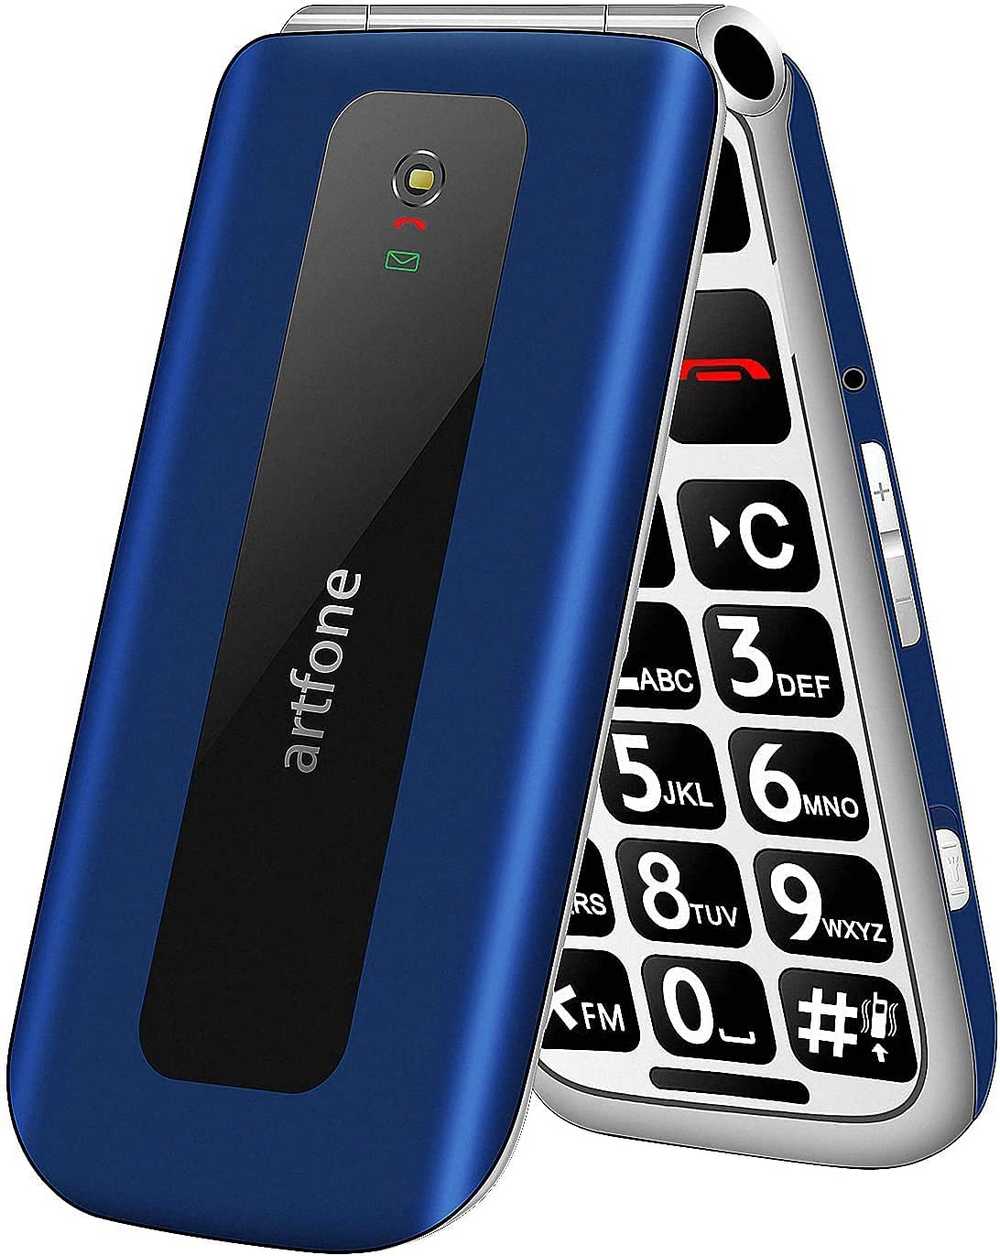 mobile-phone-for-seniors-artfone-f20-blue.jpg